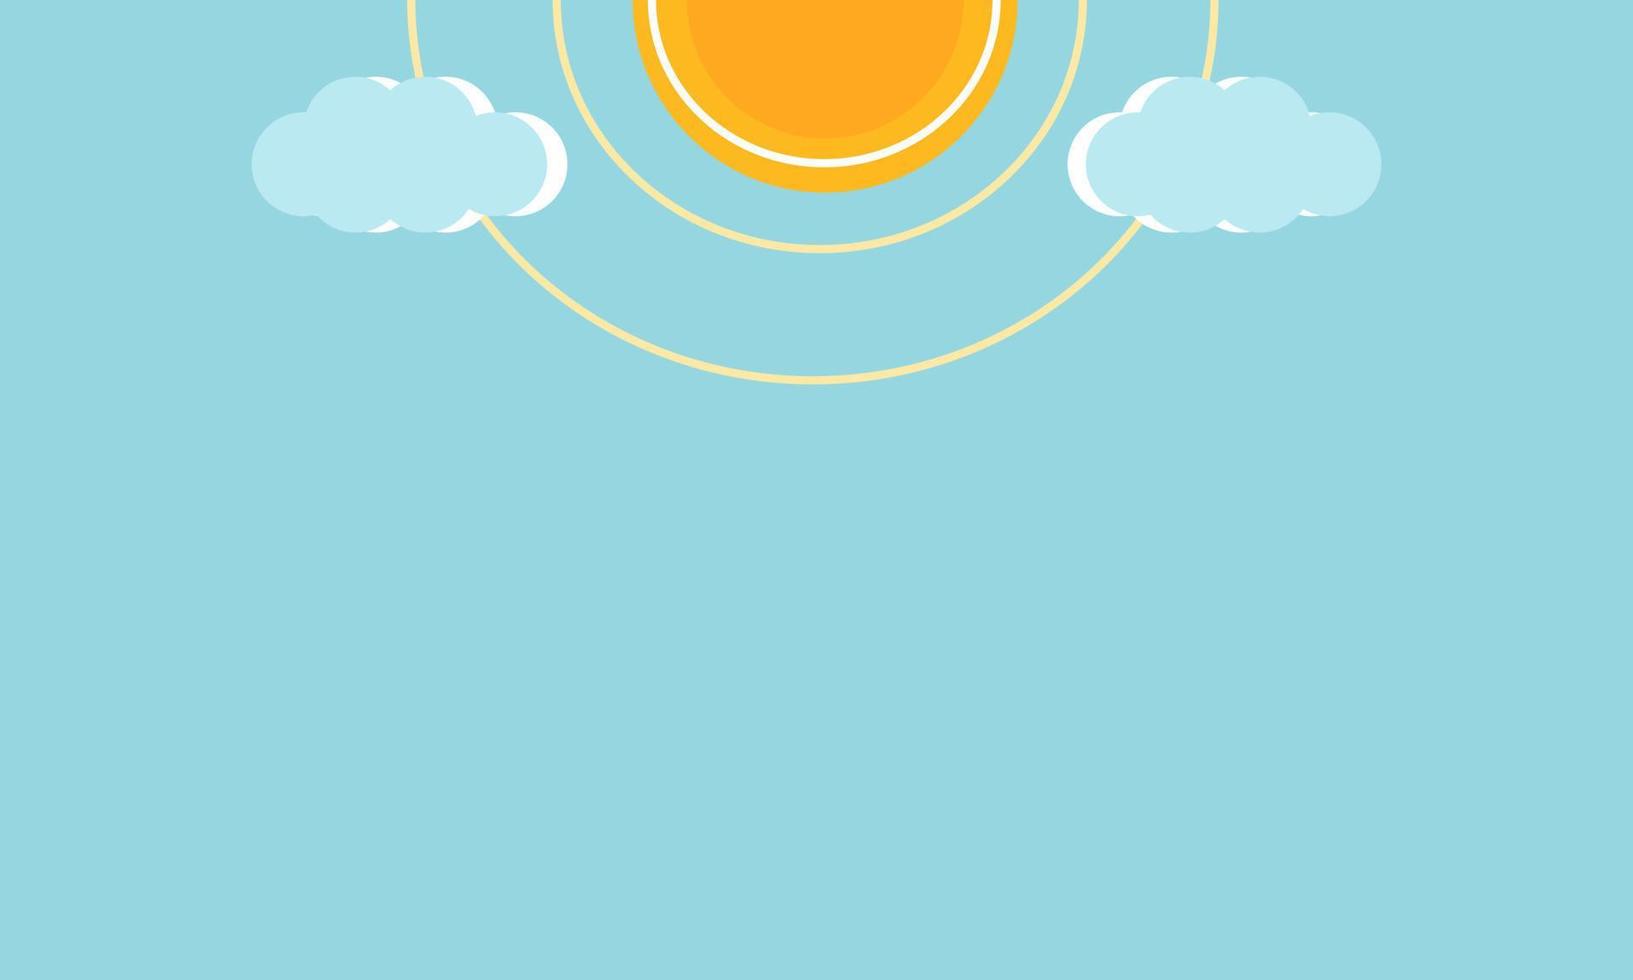 ljus blå solsken bakgrund med Sol och klunsar, platt vektor illustration.